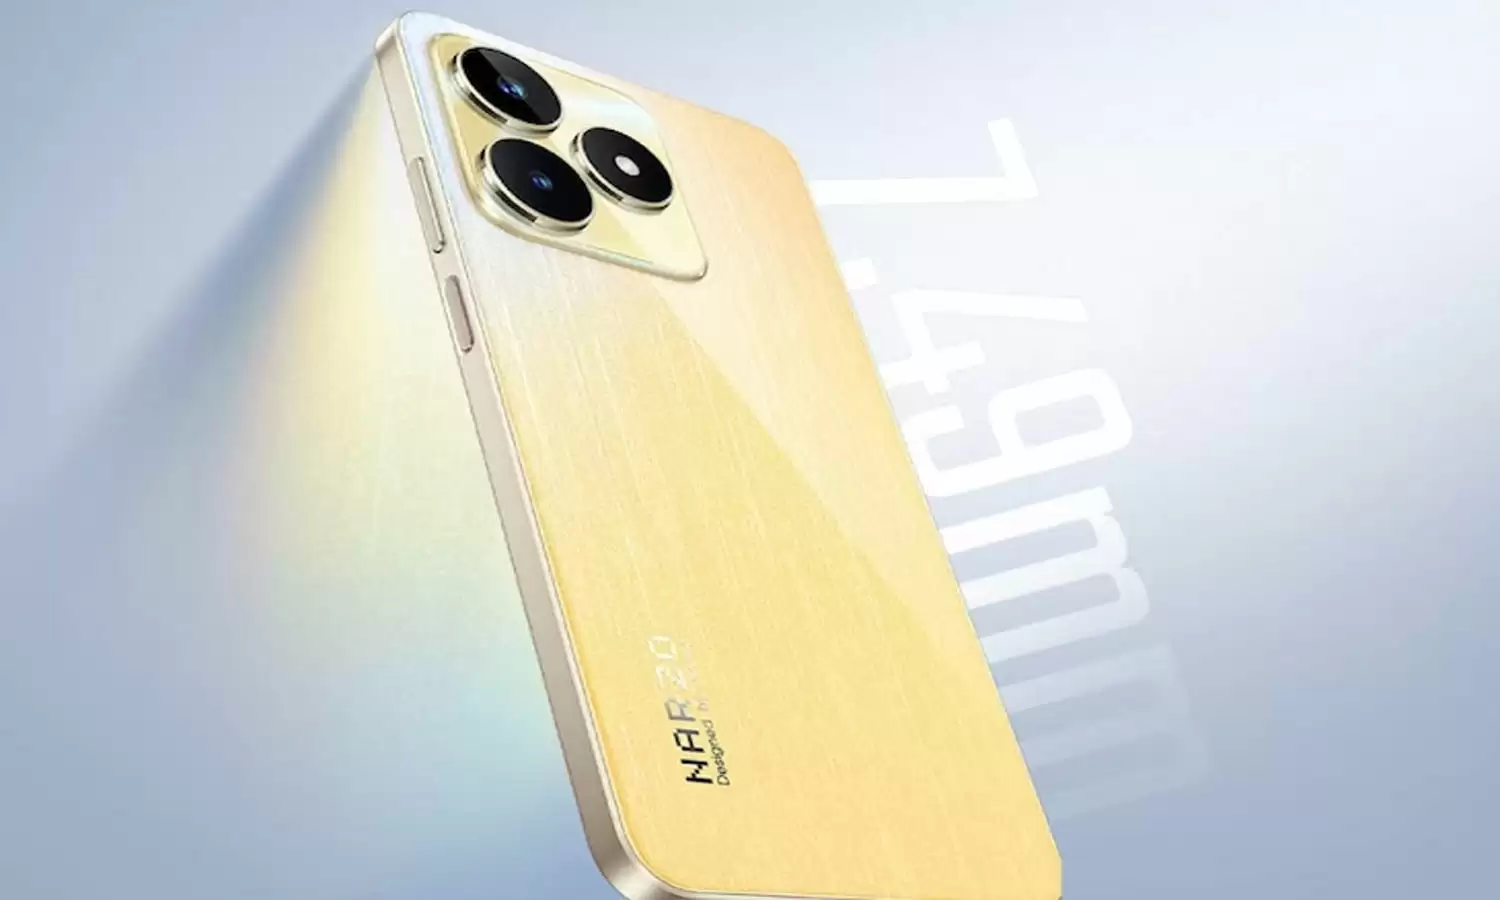 Realme का फ़ोन 2TB स्टोरेज एवं बेहतरीन कैमरे के साथ एंड्रॉयड यूज़र का दिल जीत लेगा